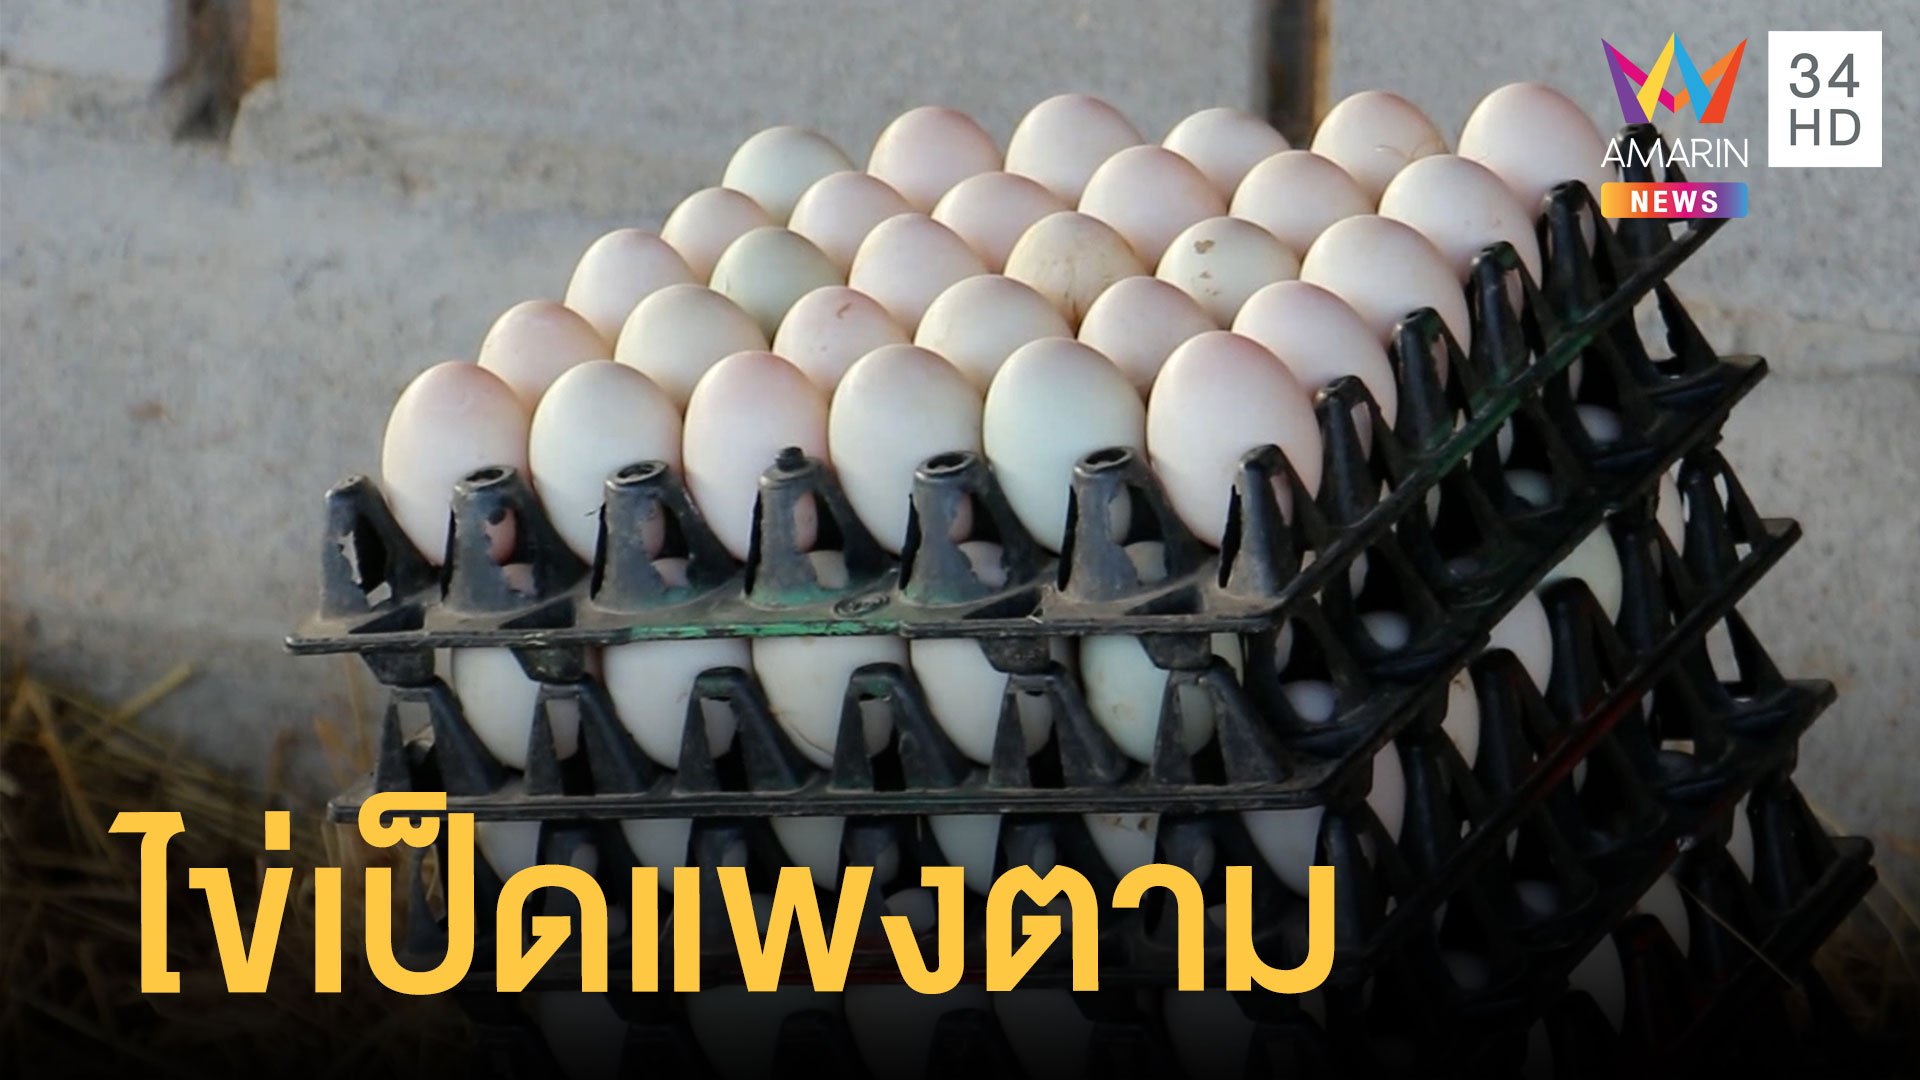 คนเลี้ยงเป็ดโอด ค่าอาหารสัตว์แพงต้องขึ้นราคาไข่เป็ด | ข่าวอรุณอมรินทร์ | 15 ม.ค. 65 | AMARIN TVHD34